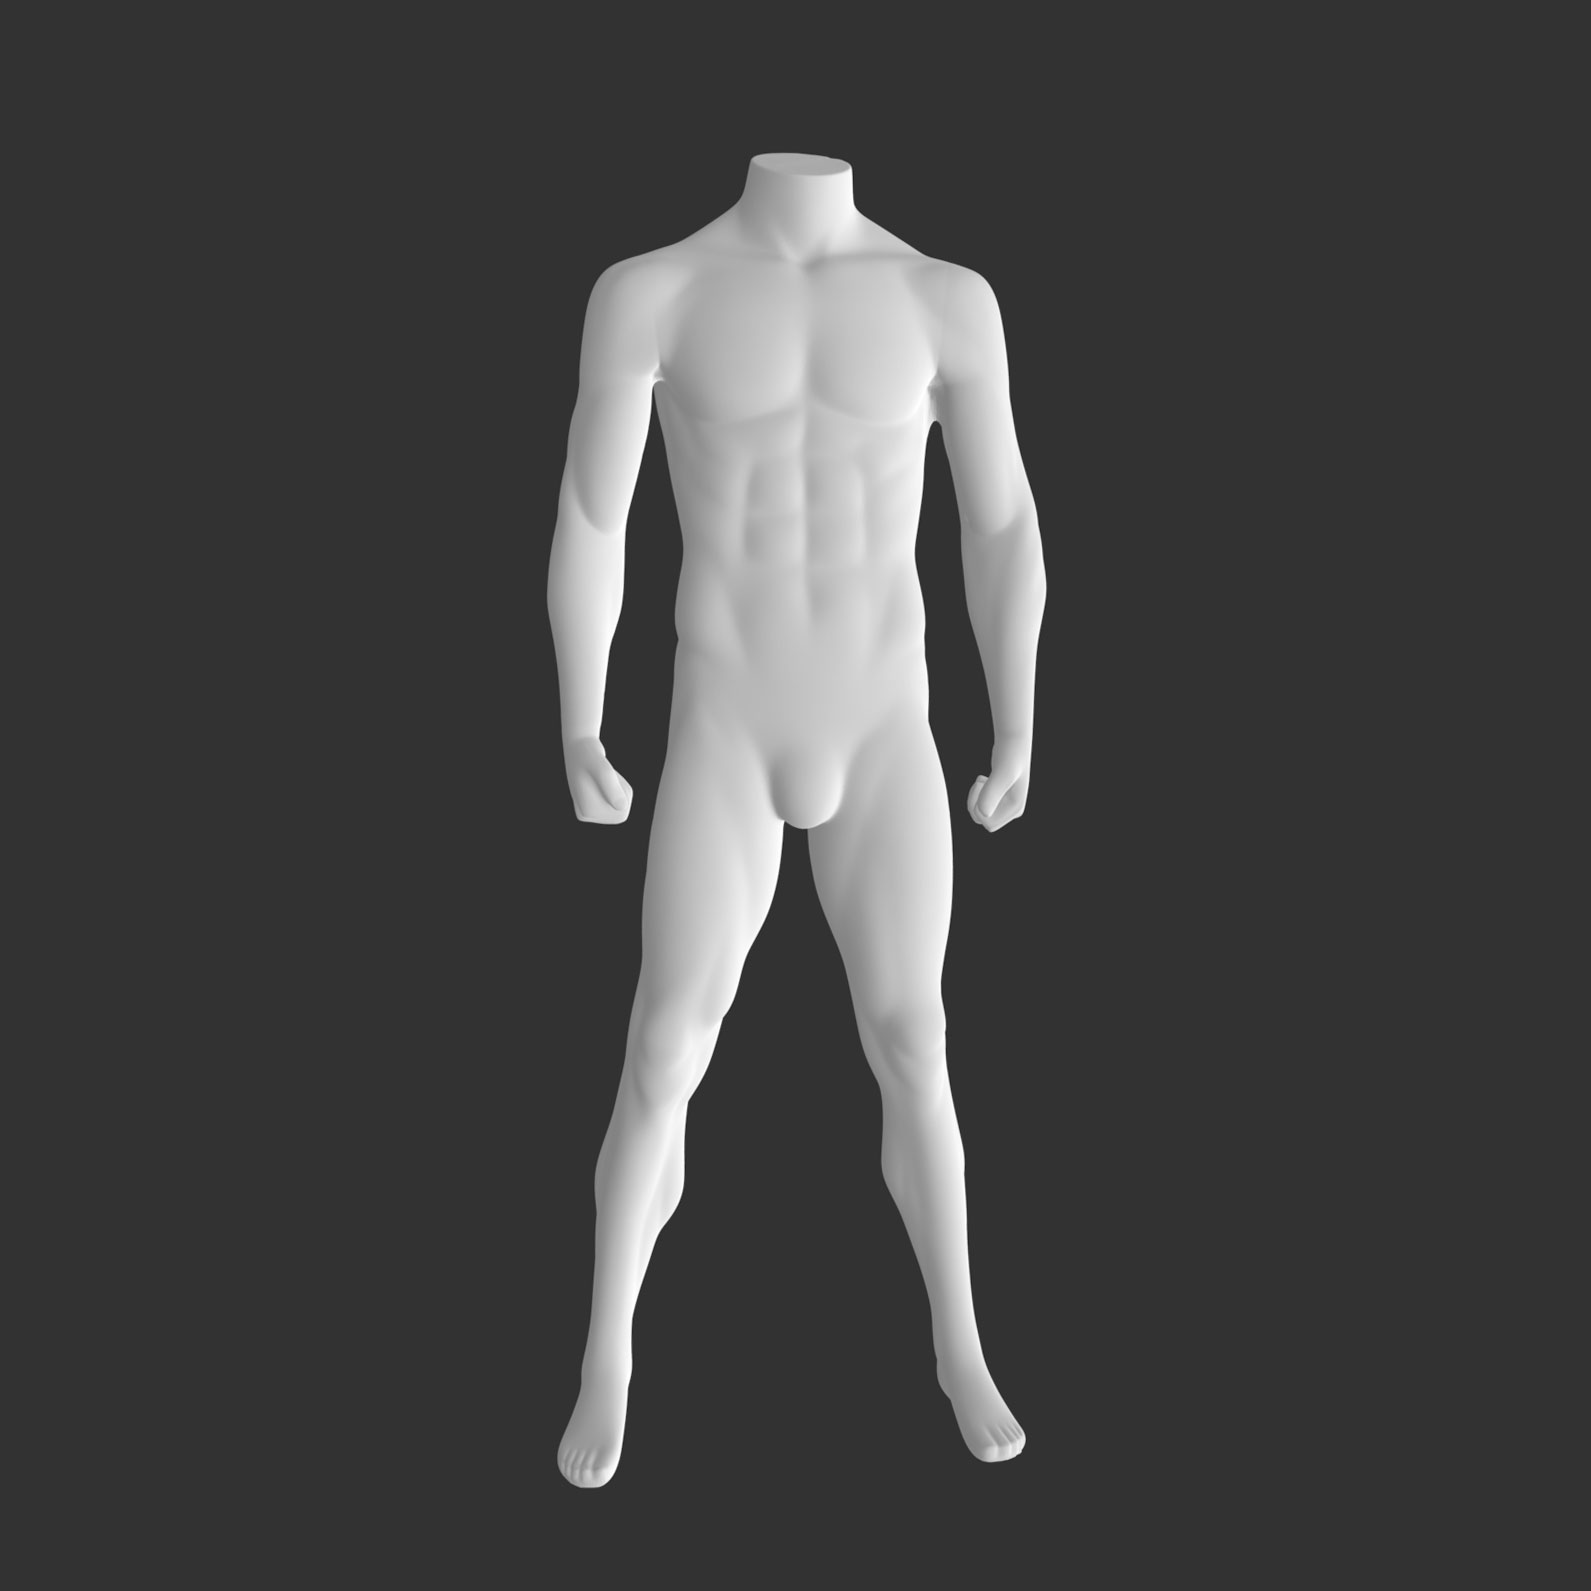 Sportovní mužské figuríny 3d tiskový model